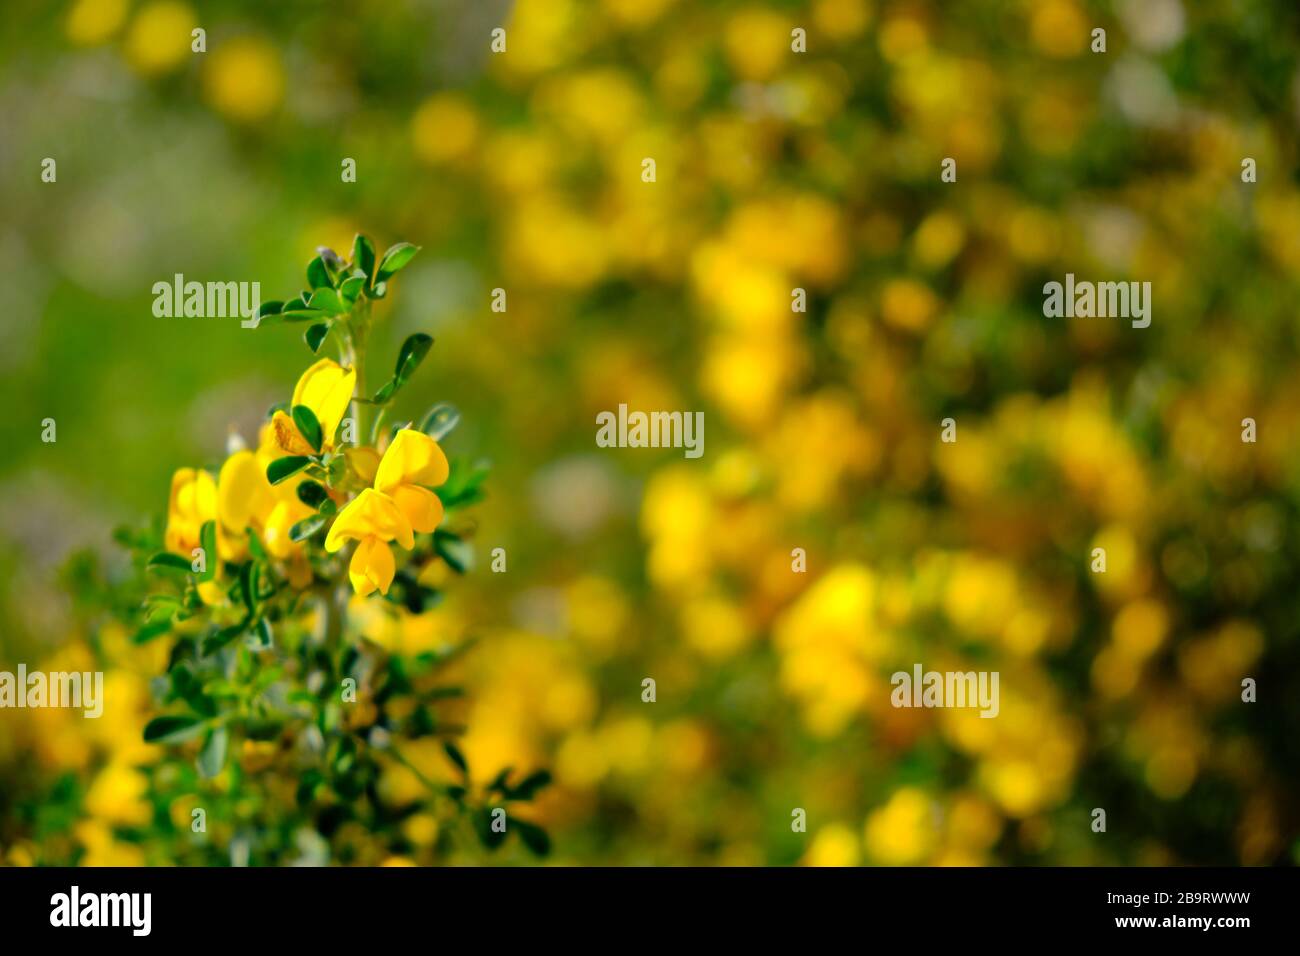 Yellow blossoming flowers of Coronilla Coronata L. Stock Photo